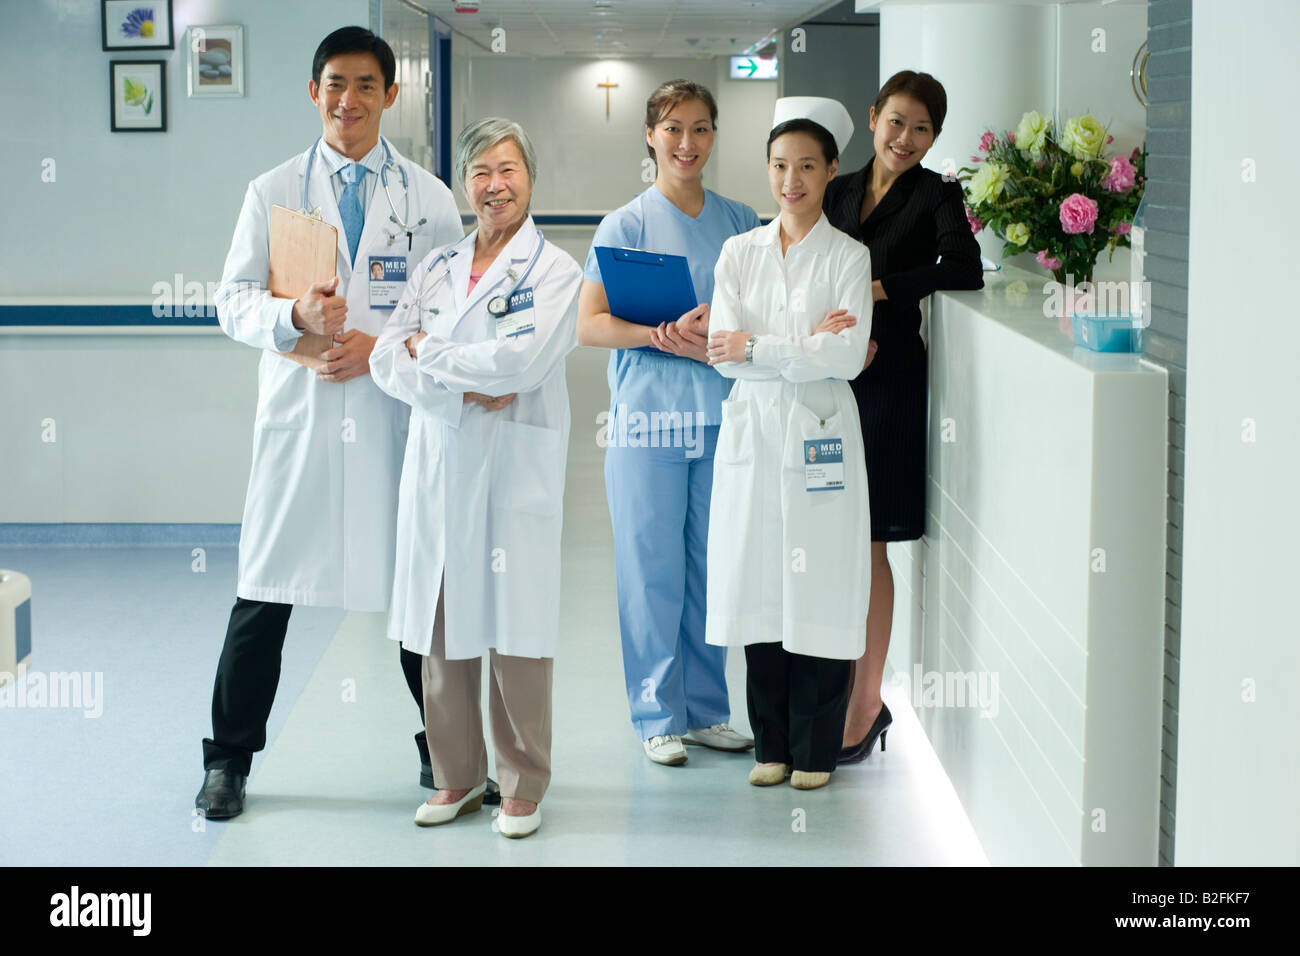 Portrait of medical staff debout dans un couloir et smiling Banque D'Images